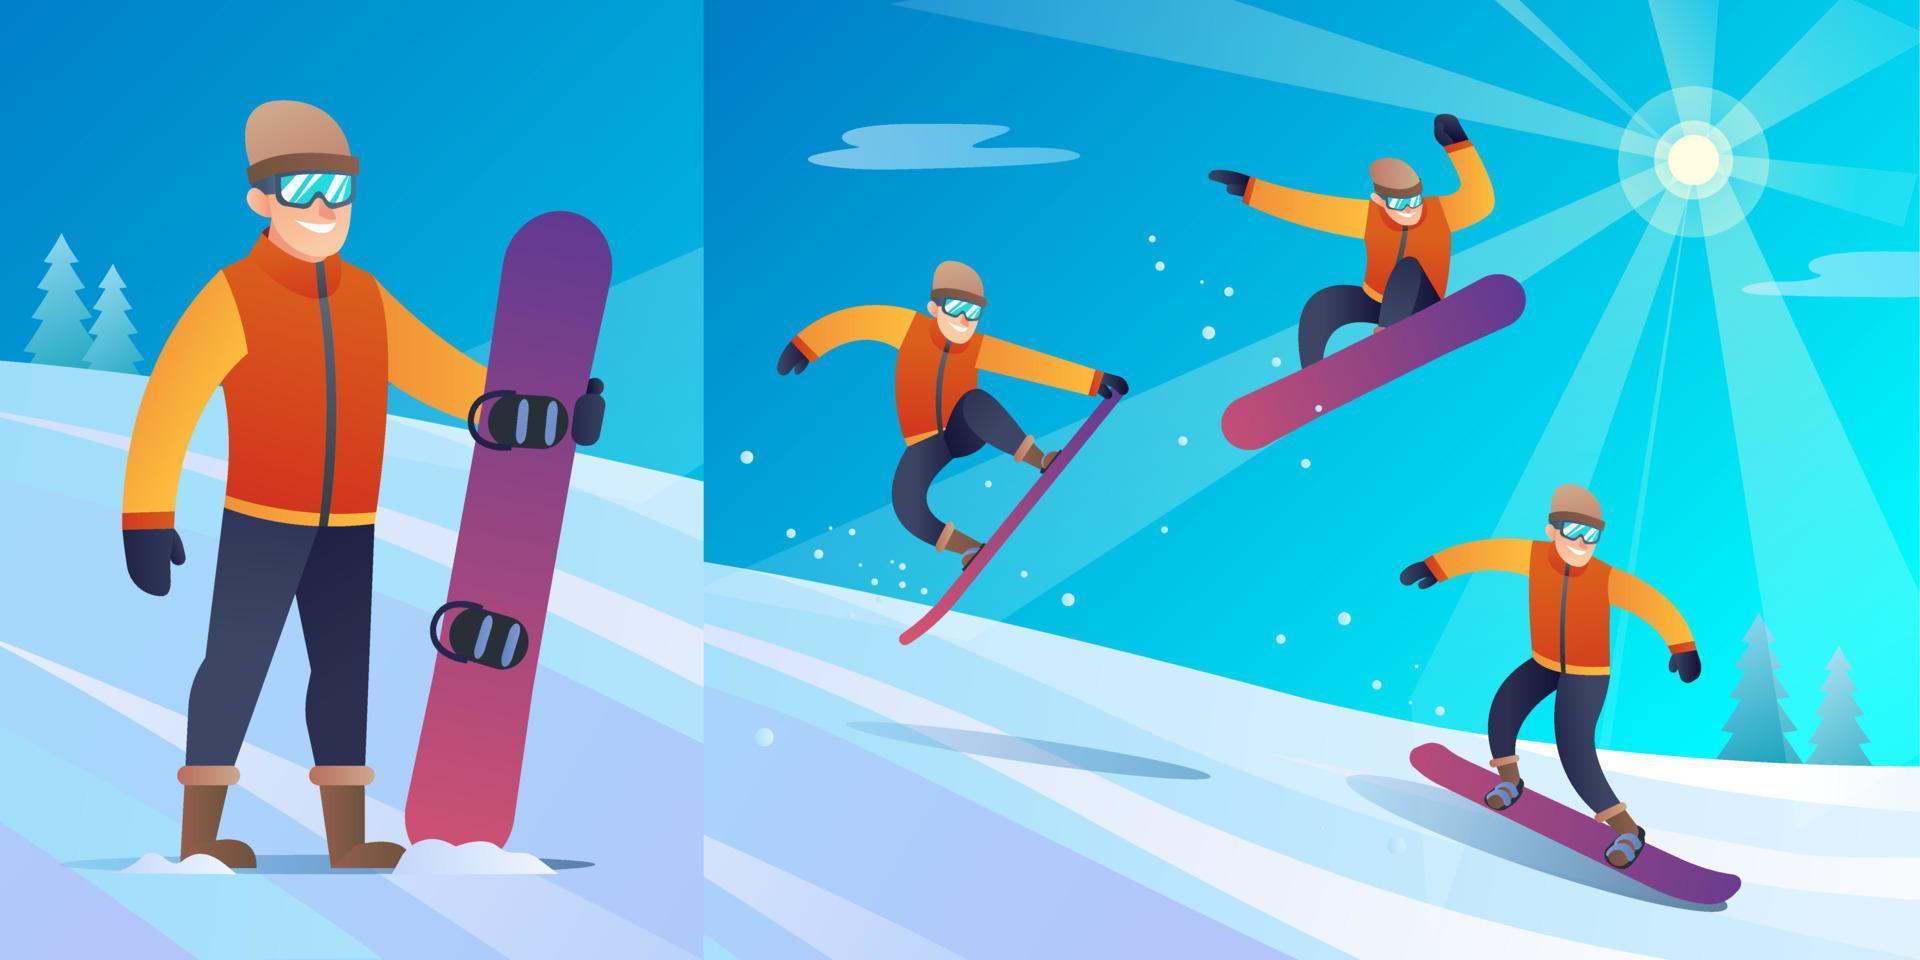 winter snowboarder karakter met verschillende sprong poses in vectorillustratie vector